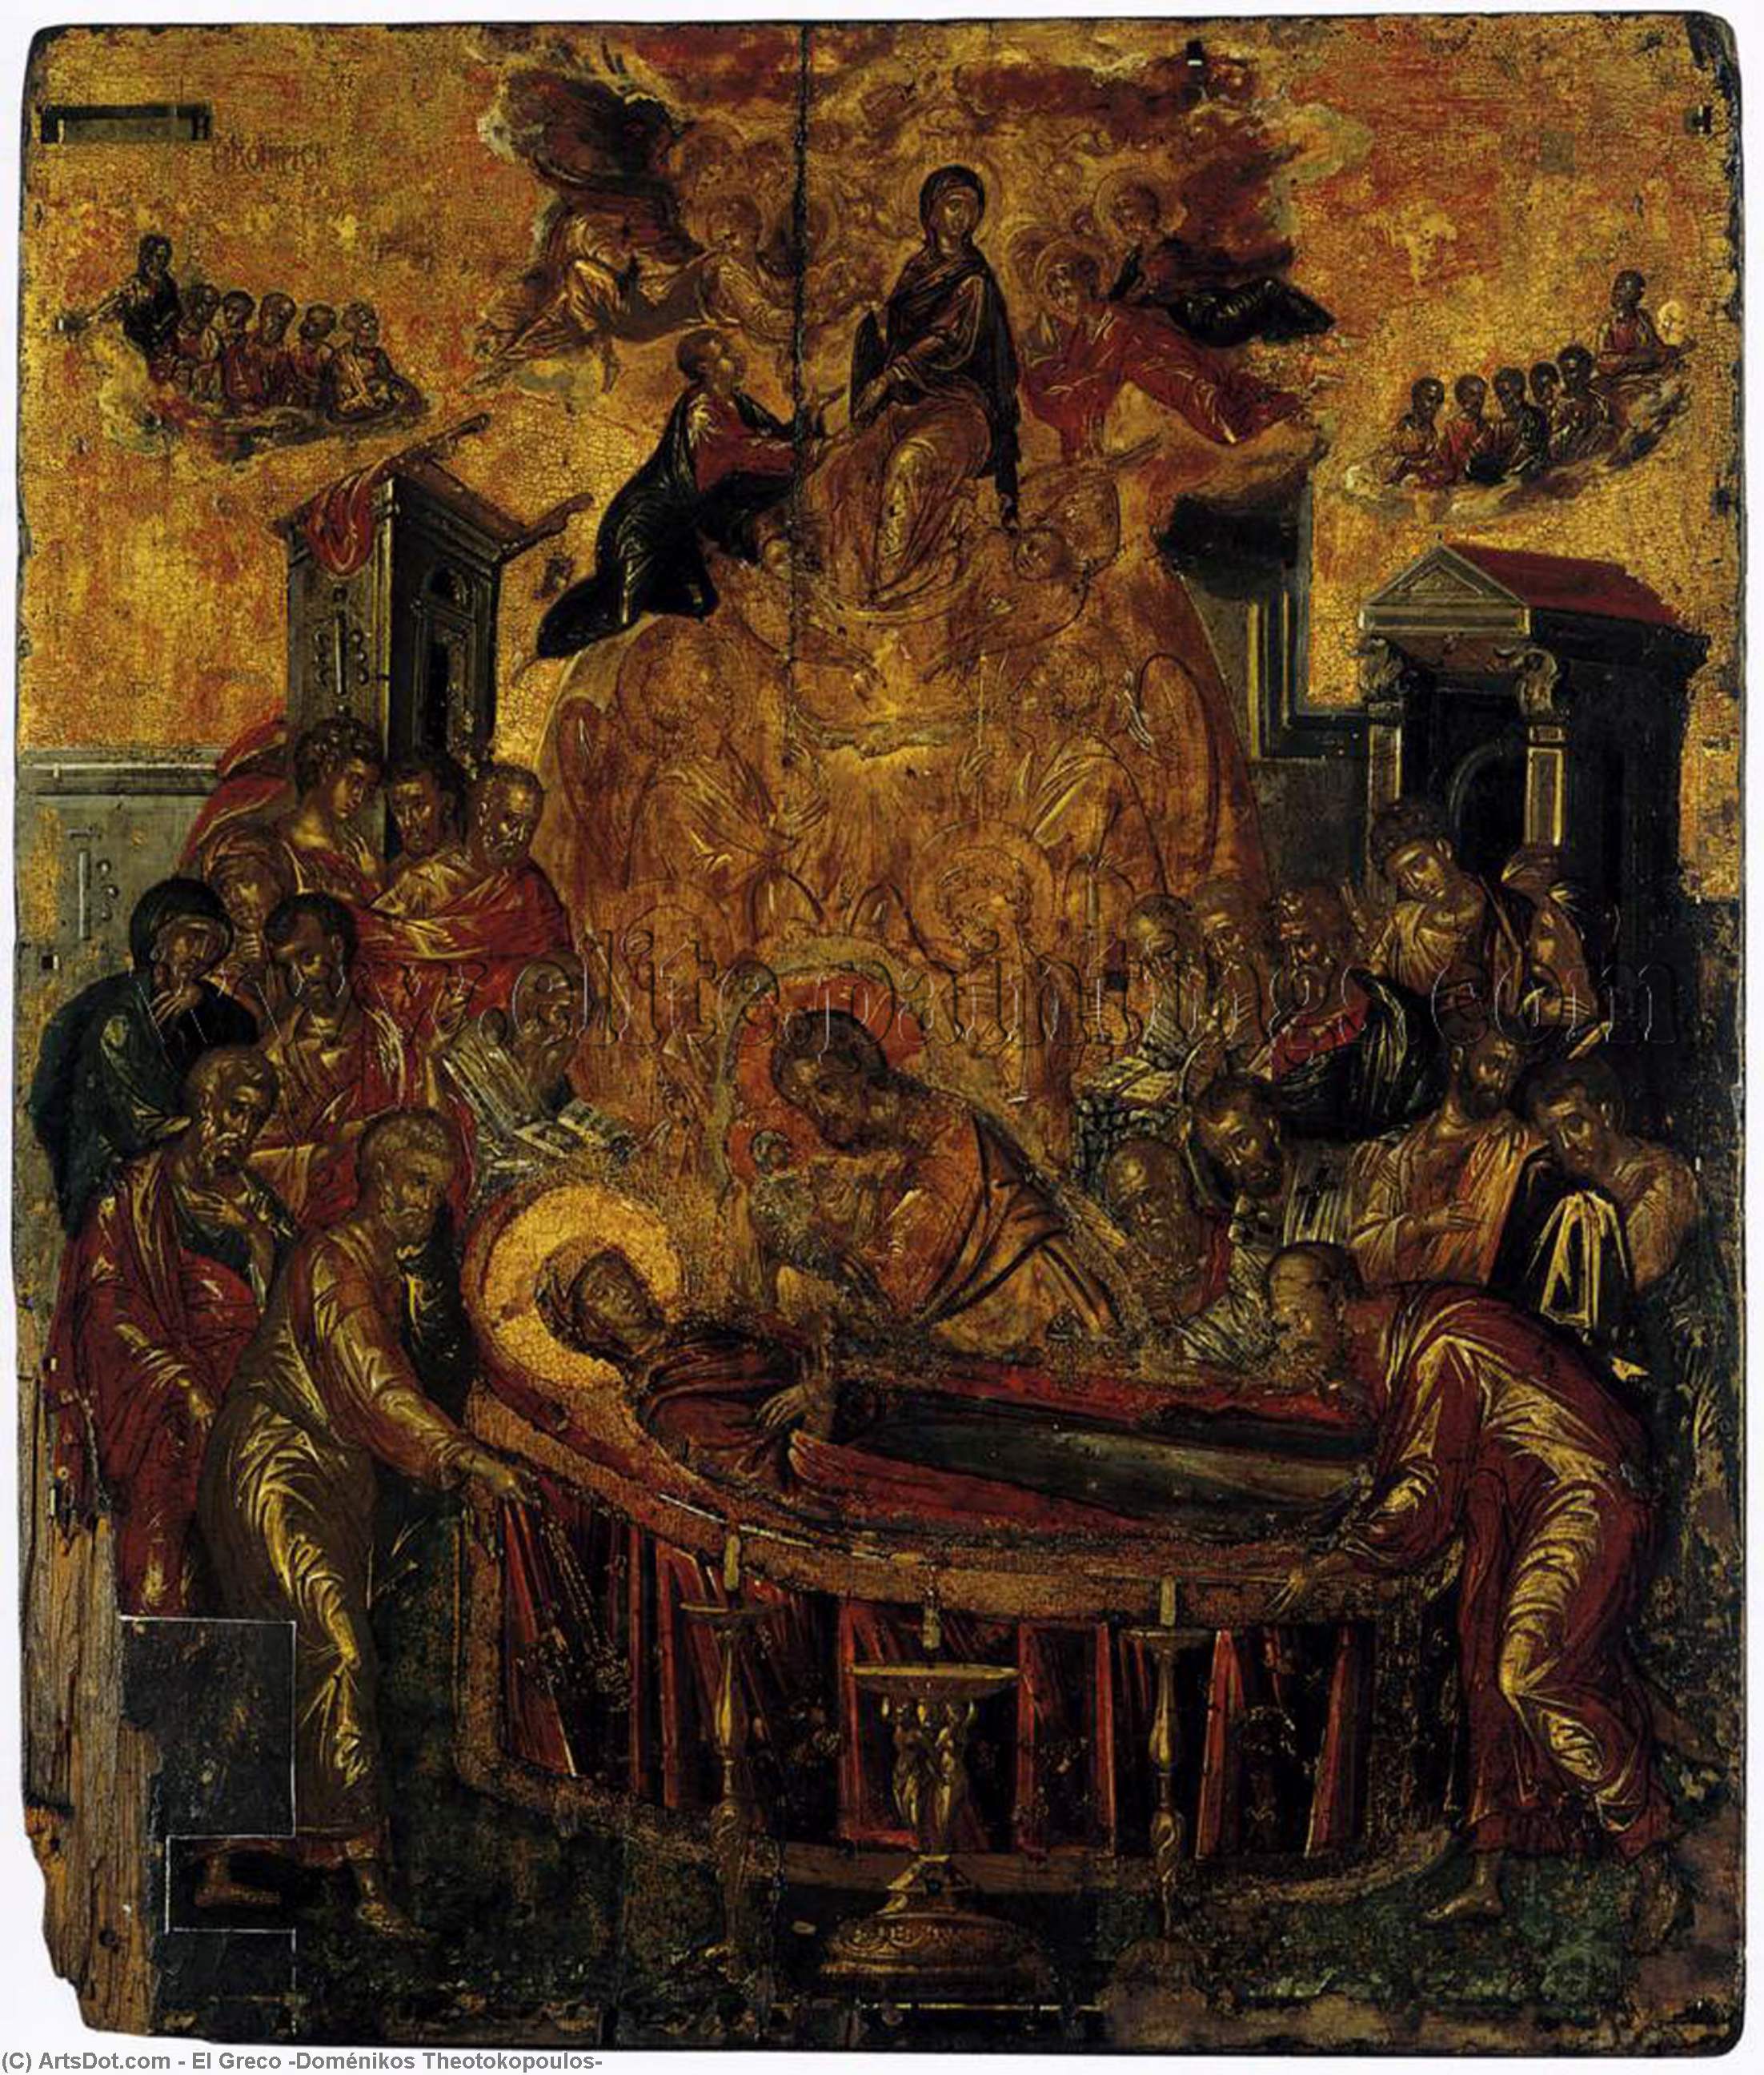 WikiOO.org - Encyclopedia of Fine Arts - Festés, Grafika El Greco (Doménikos Theotokopoulos) - The Dormition of the Virgin